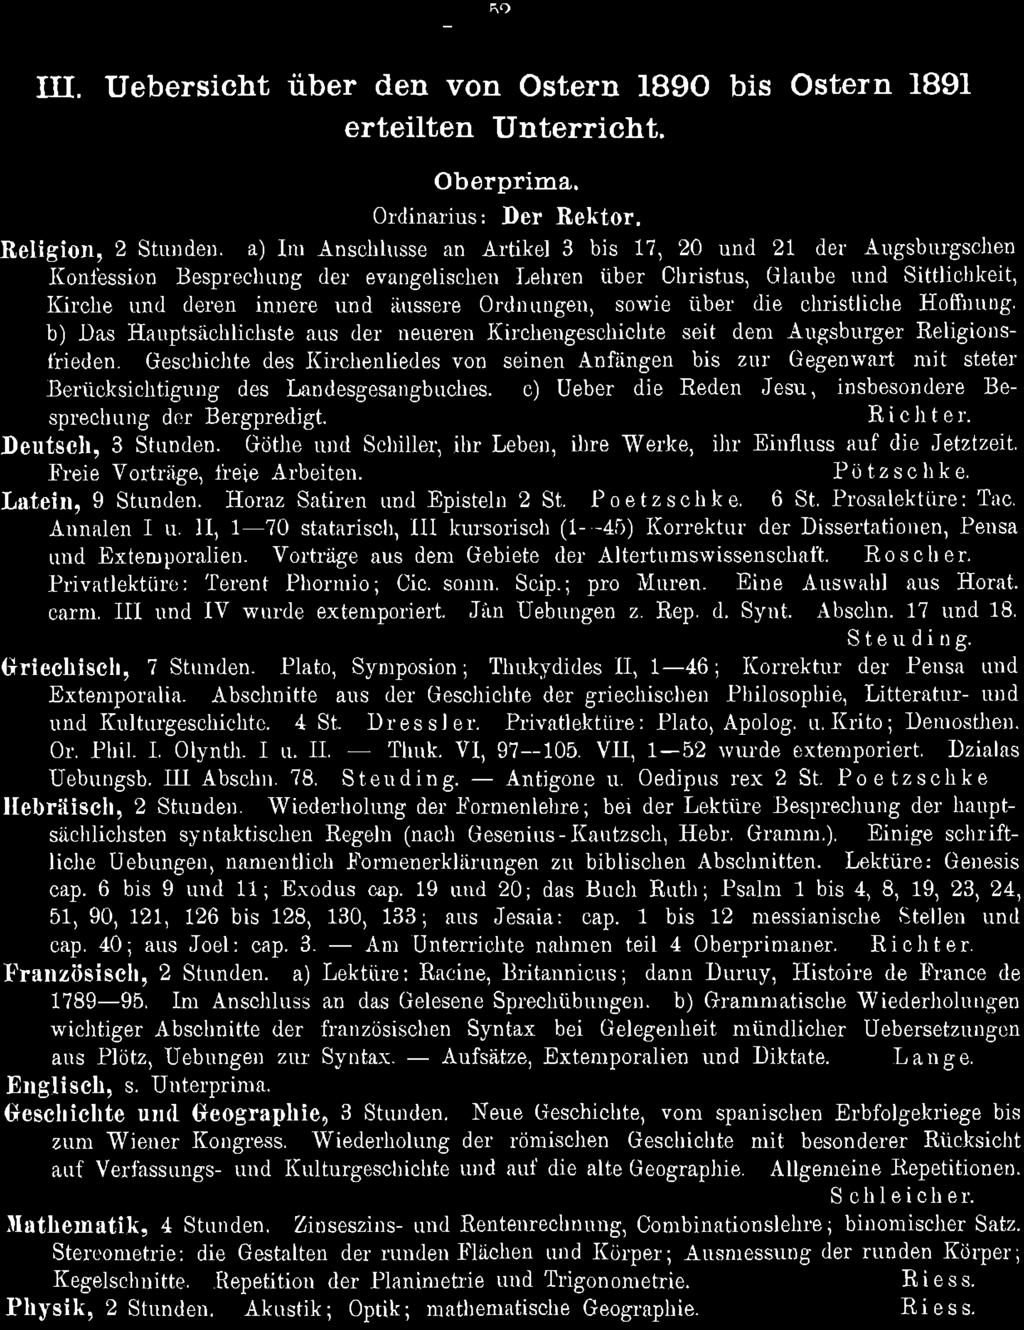 52 III. Uebersicht über den von Ostern 1890 bis Ostern 1891 erteilten Unterricht. Oberprima. Ordinarius: Der Rektor.